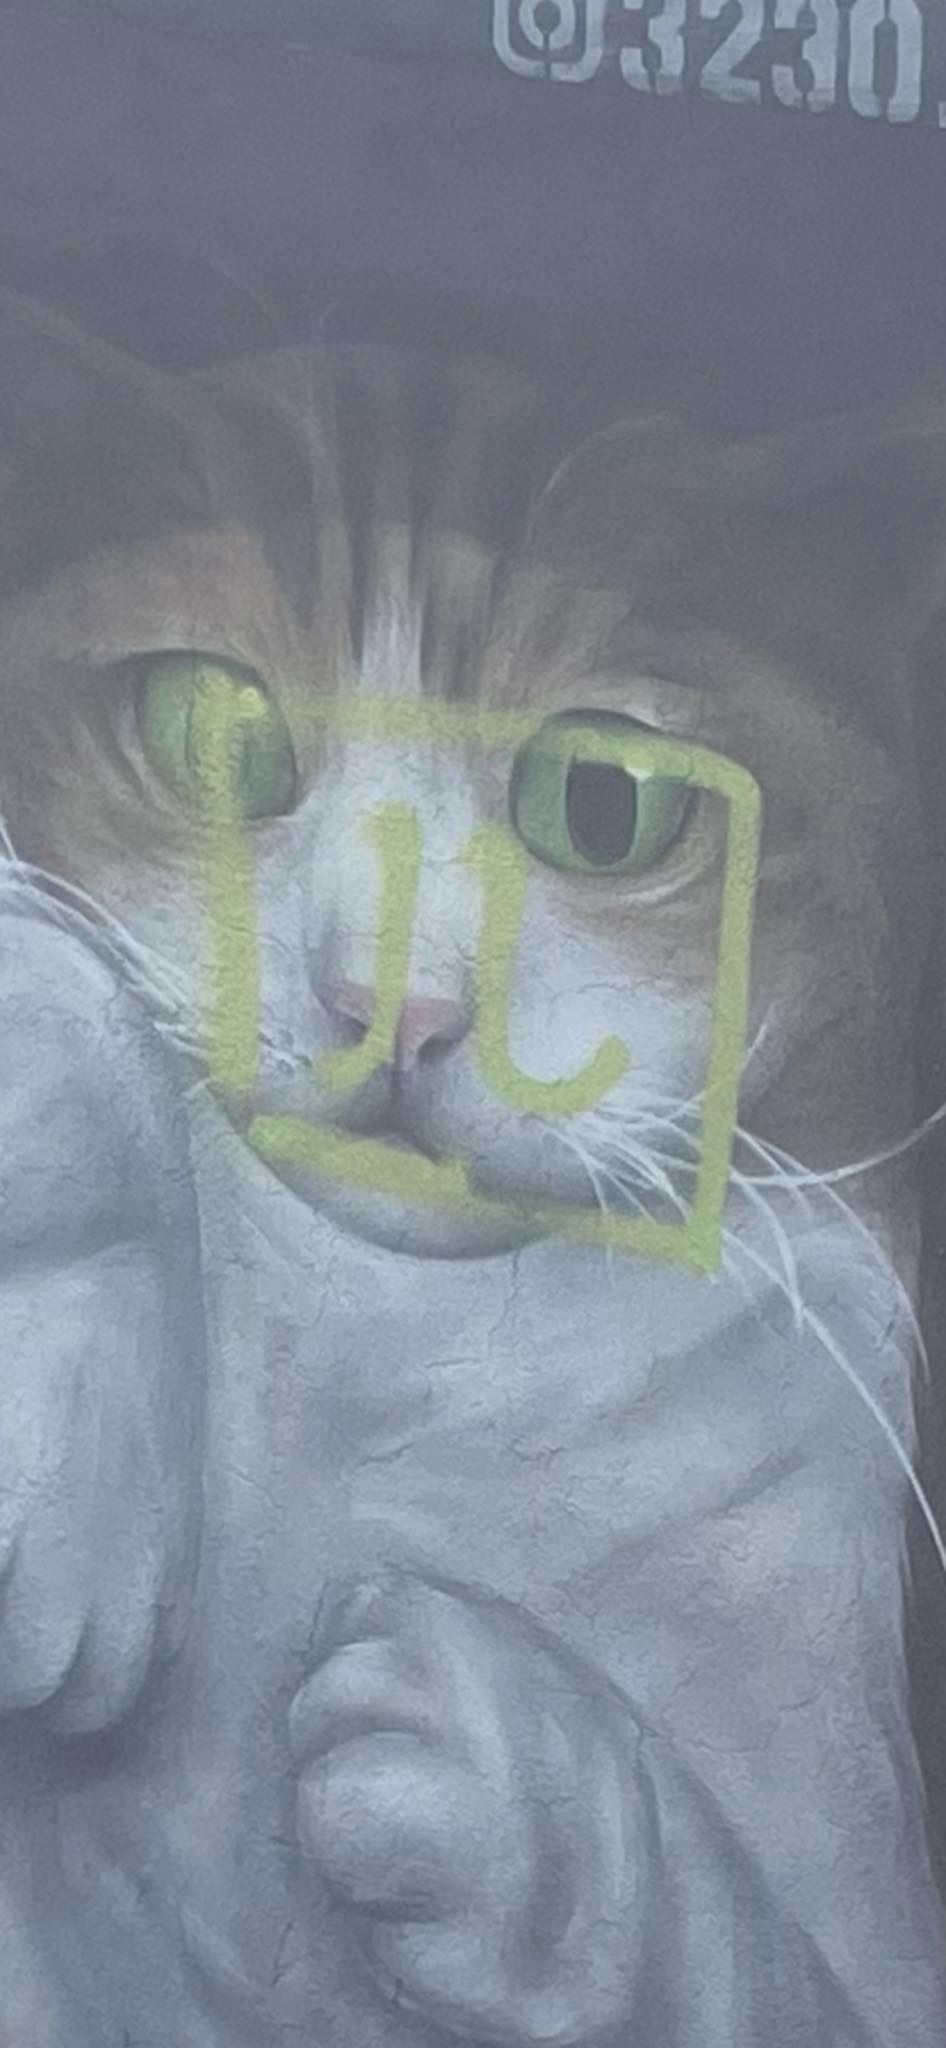 猫咪面部被人用绿色油漆喷上一个像「四」字的符号，非常碍眼。